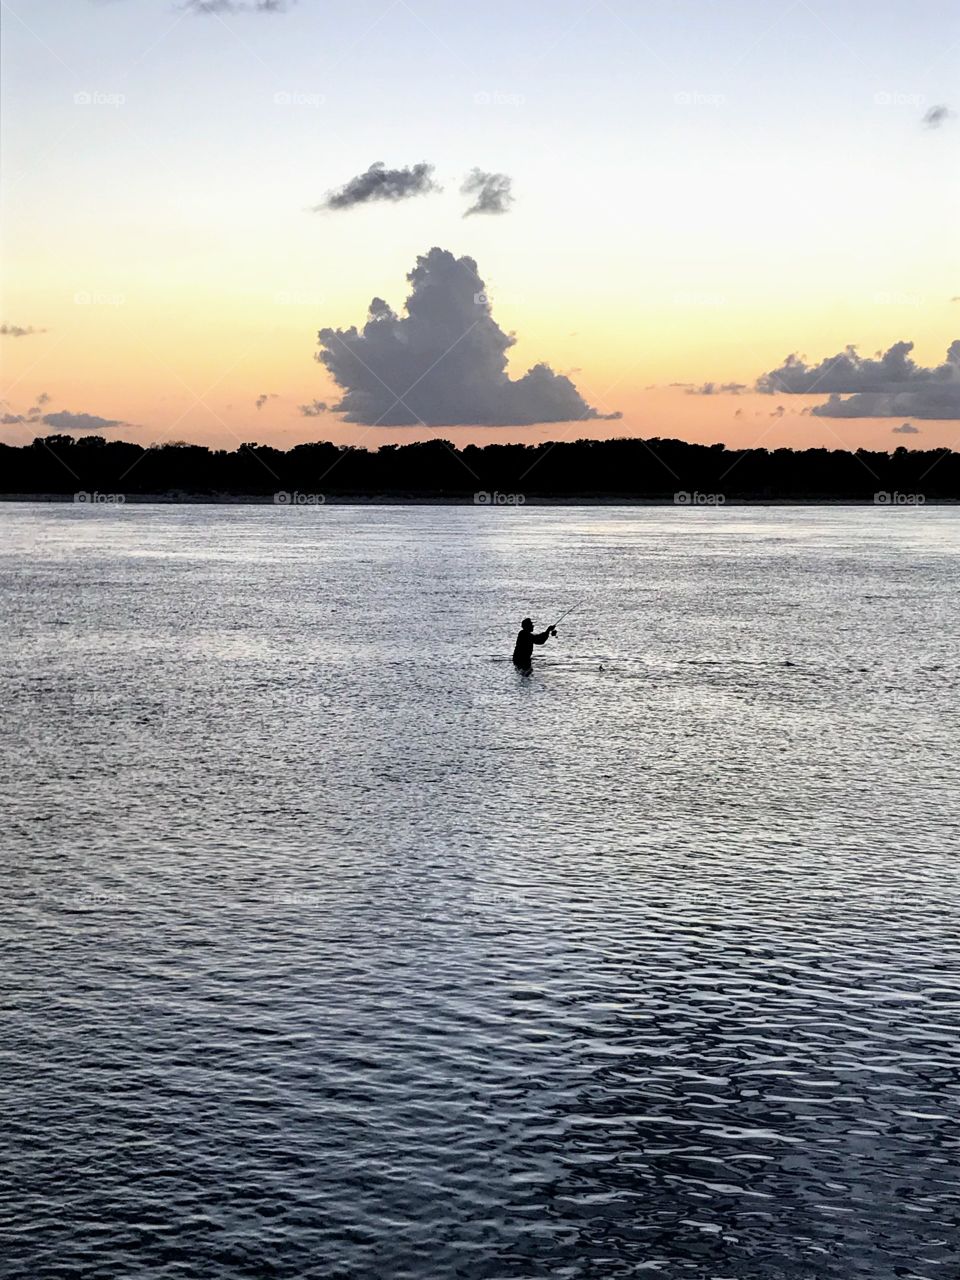 The joys of fishing at dusk